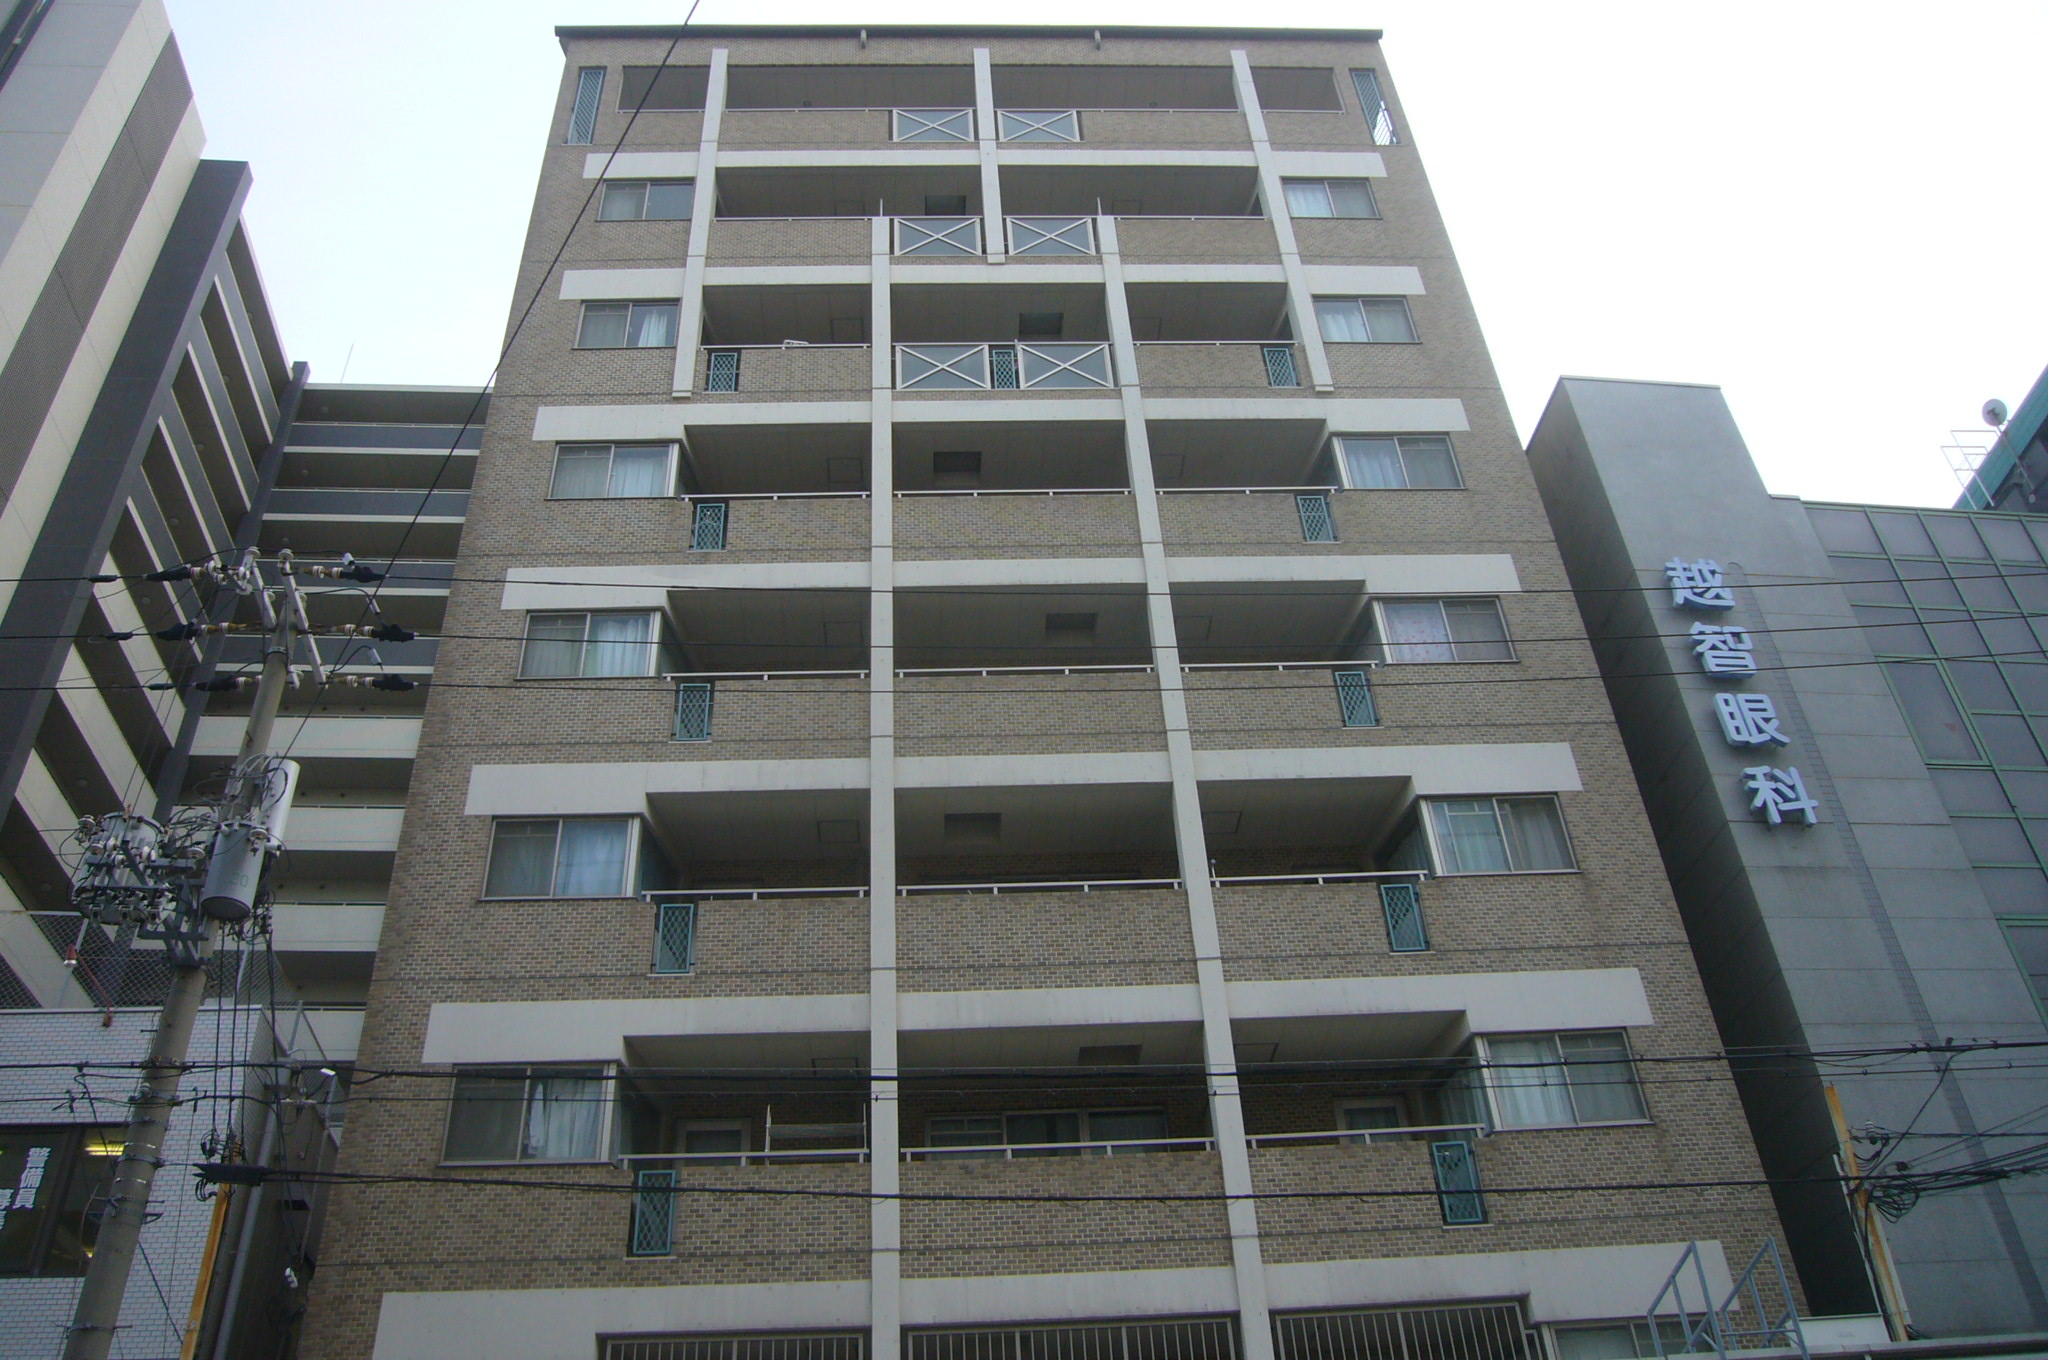 吹田市で外壁タイル貼り９階建てマンションの現場調査を行いました ...